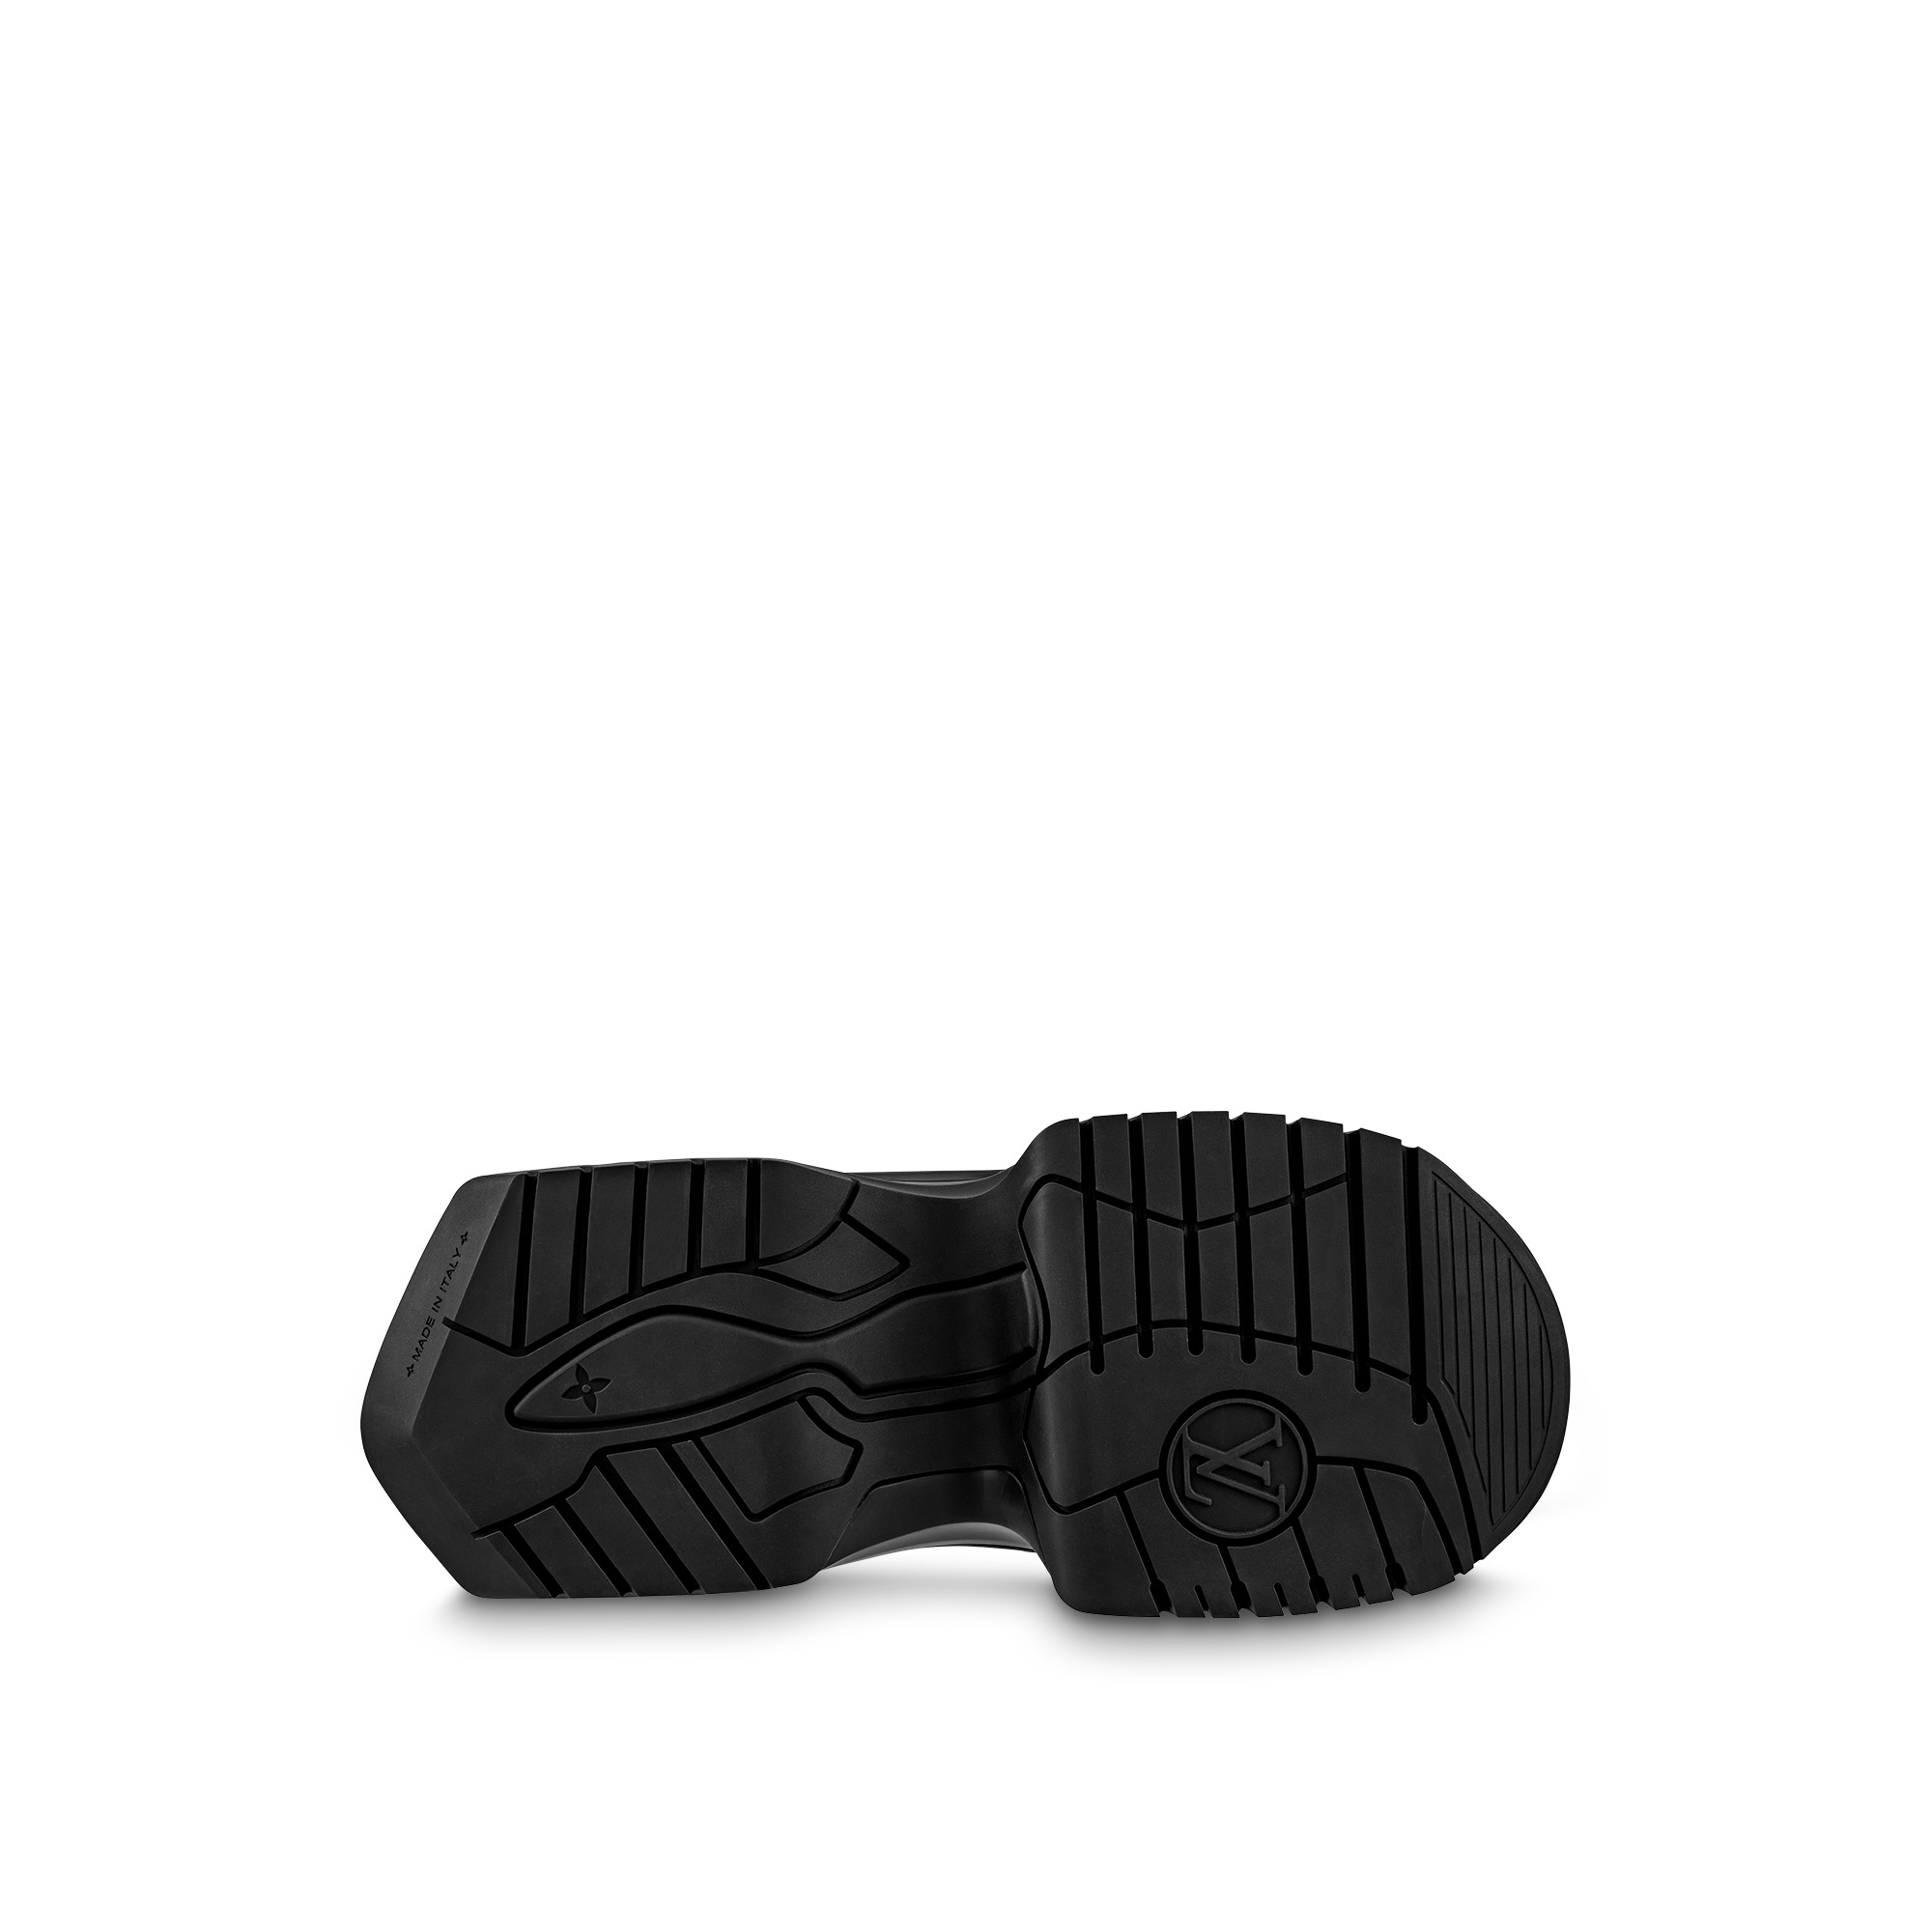 Louis Vuitton LV Archlight 2.0 Platform Ankle Boot Khaki. Size 35.0